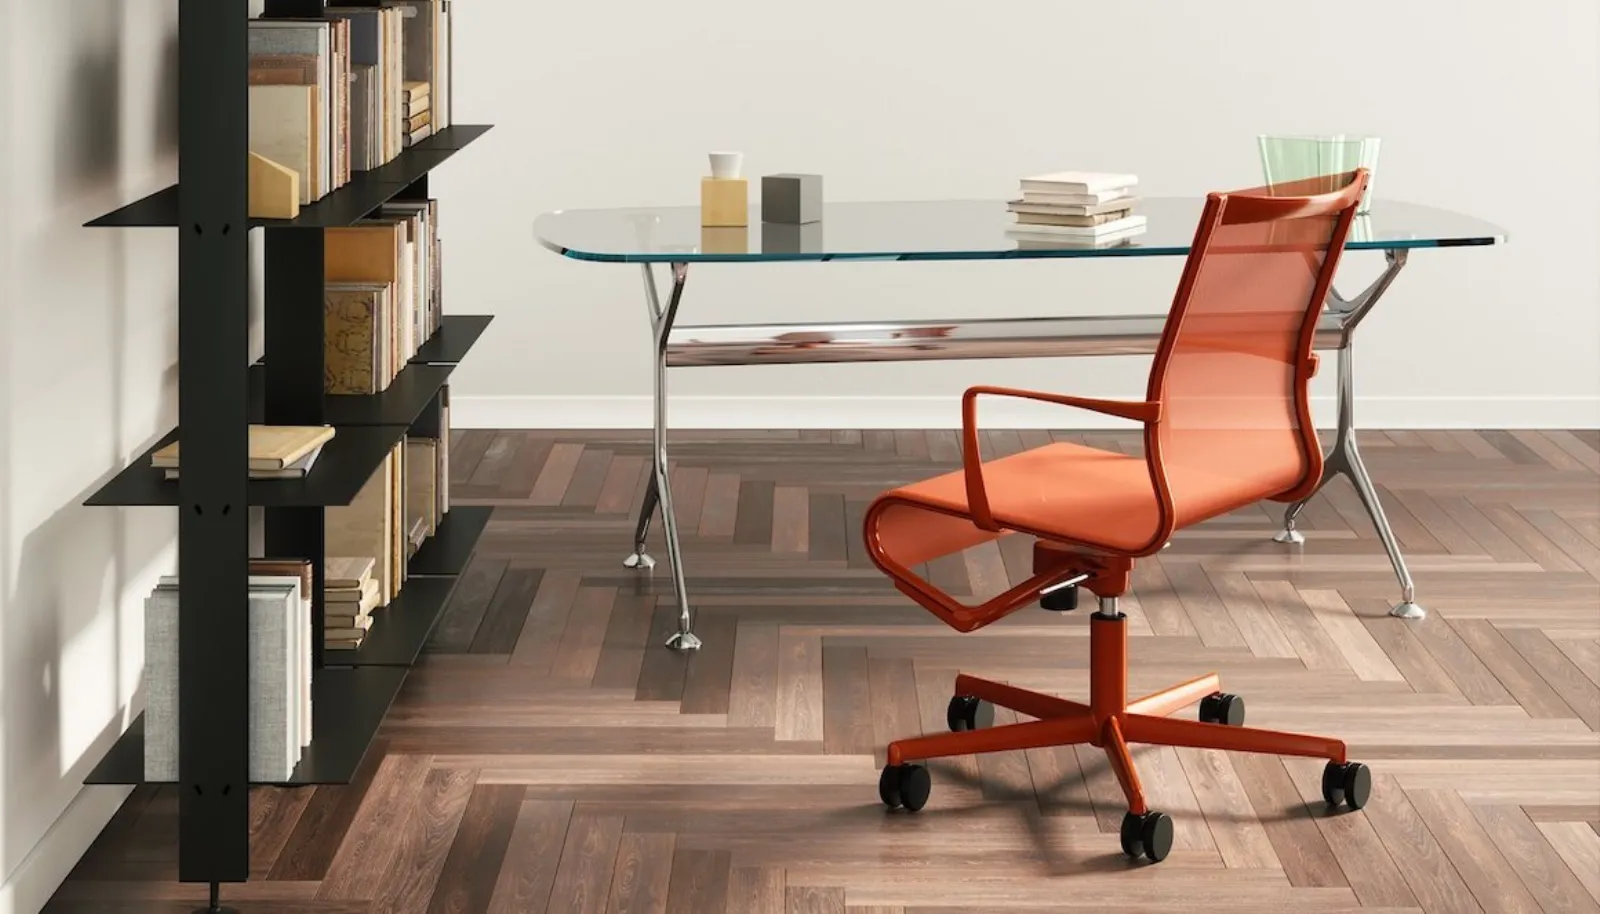 Dal design alla funzionalità: le sedie ergonomiche per una seduta